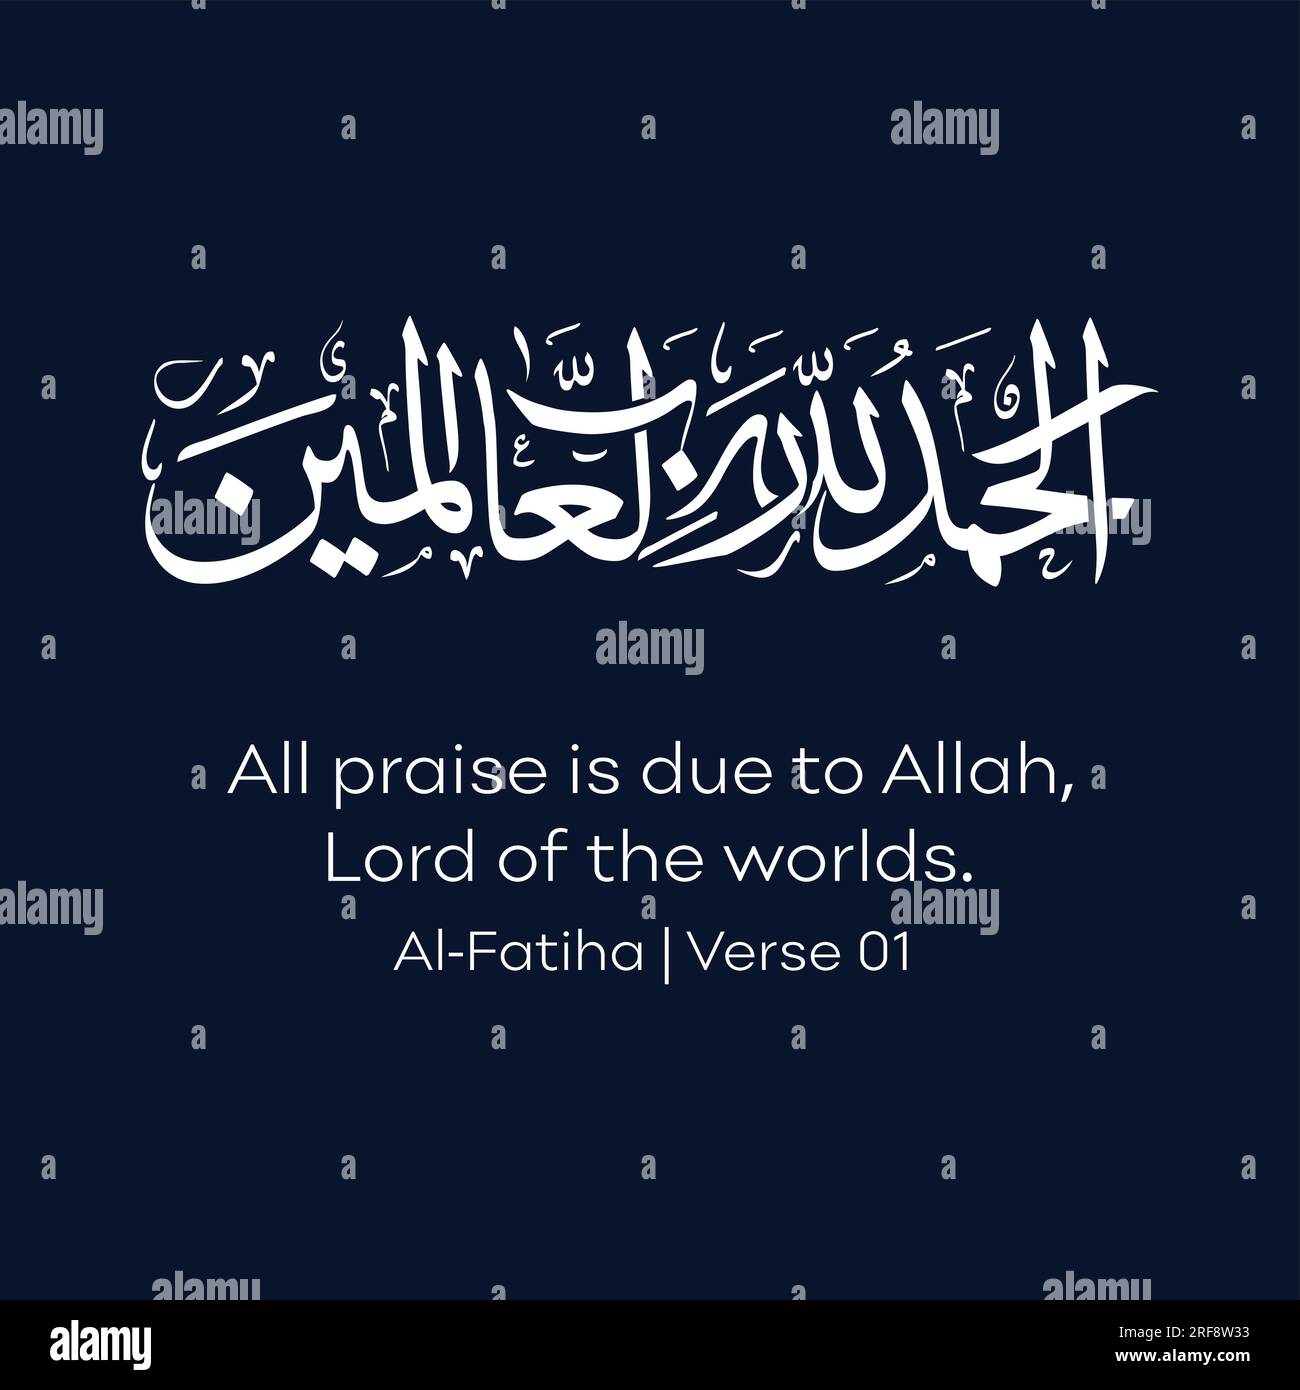 Calligraphie arabe, traduit en anglais par, toute louange est due à Allah, Seigneur des mondes, verset n ° 01 d'Al-Fatiha Illustration de Vecteur